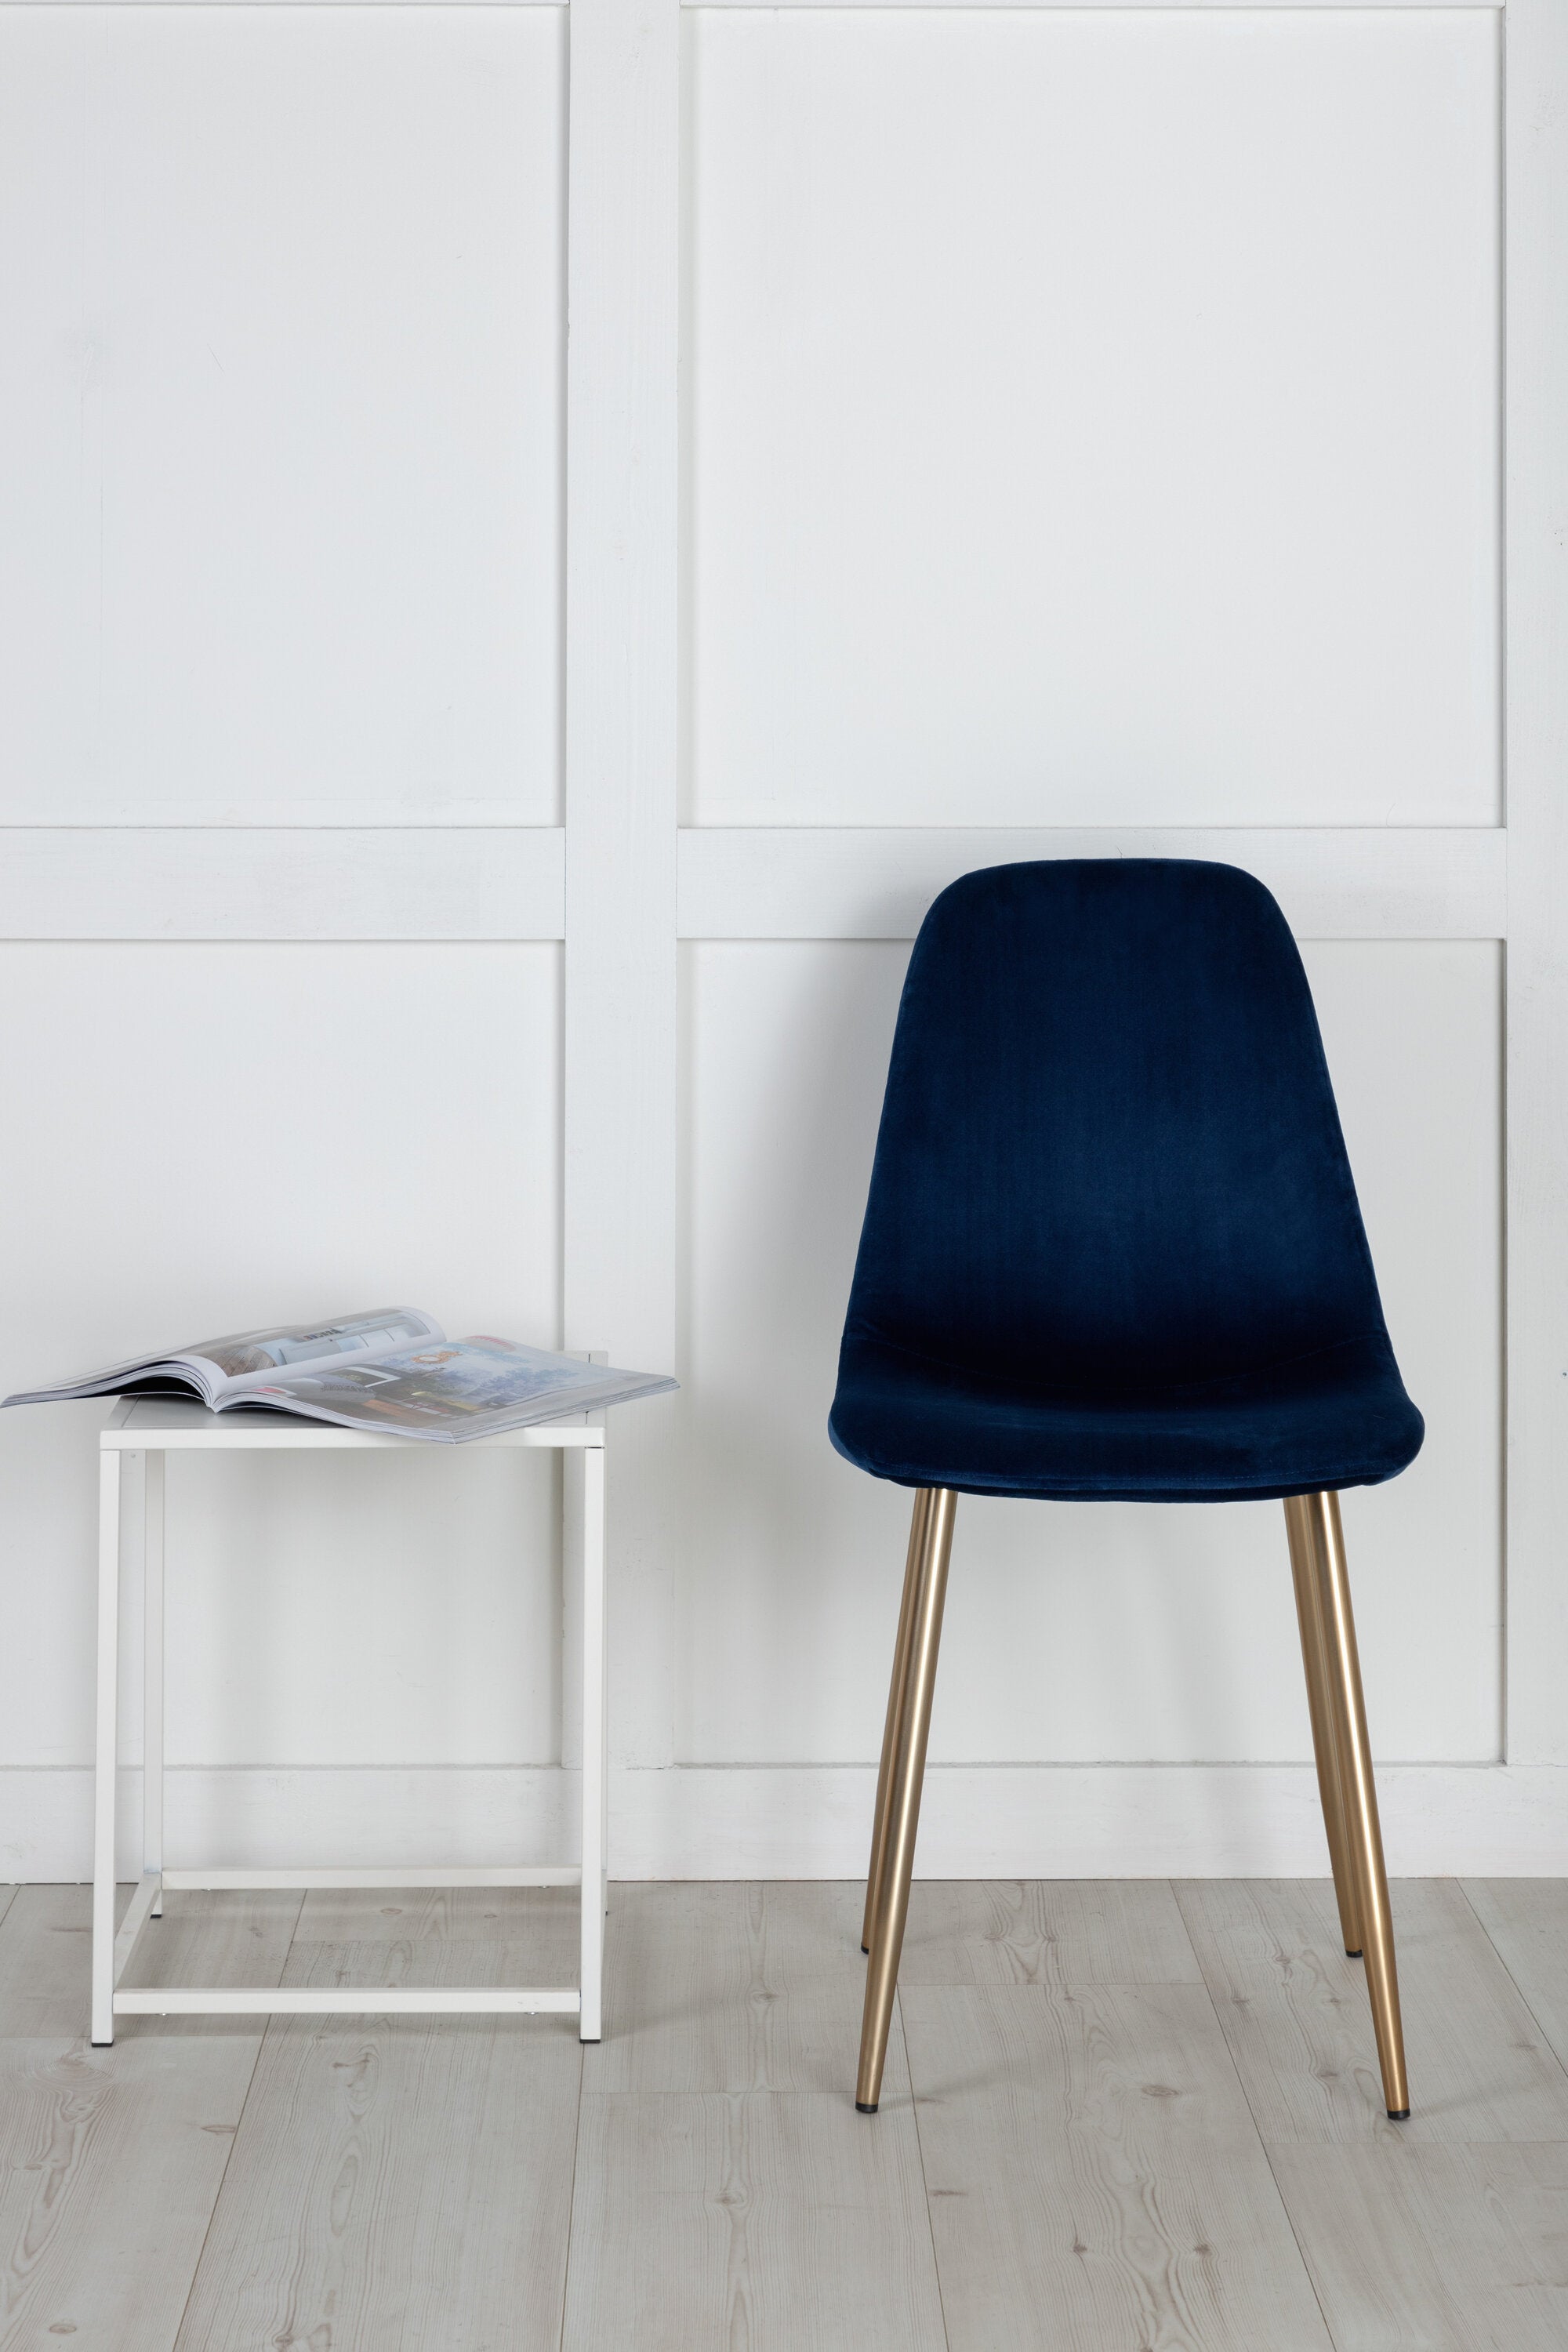 Polar Stuhl in Blau präsentiert im Onlineshop von KAQTU Design AG. Stuhl ist von Venture Home